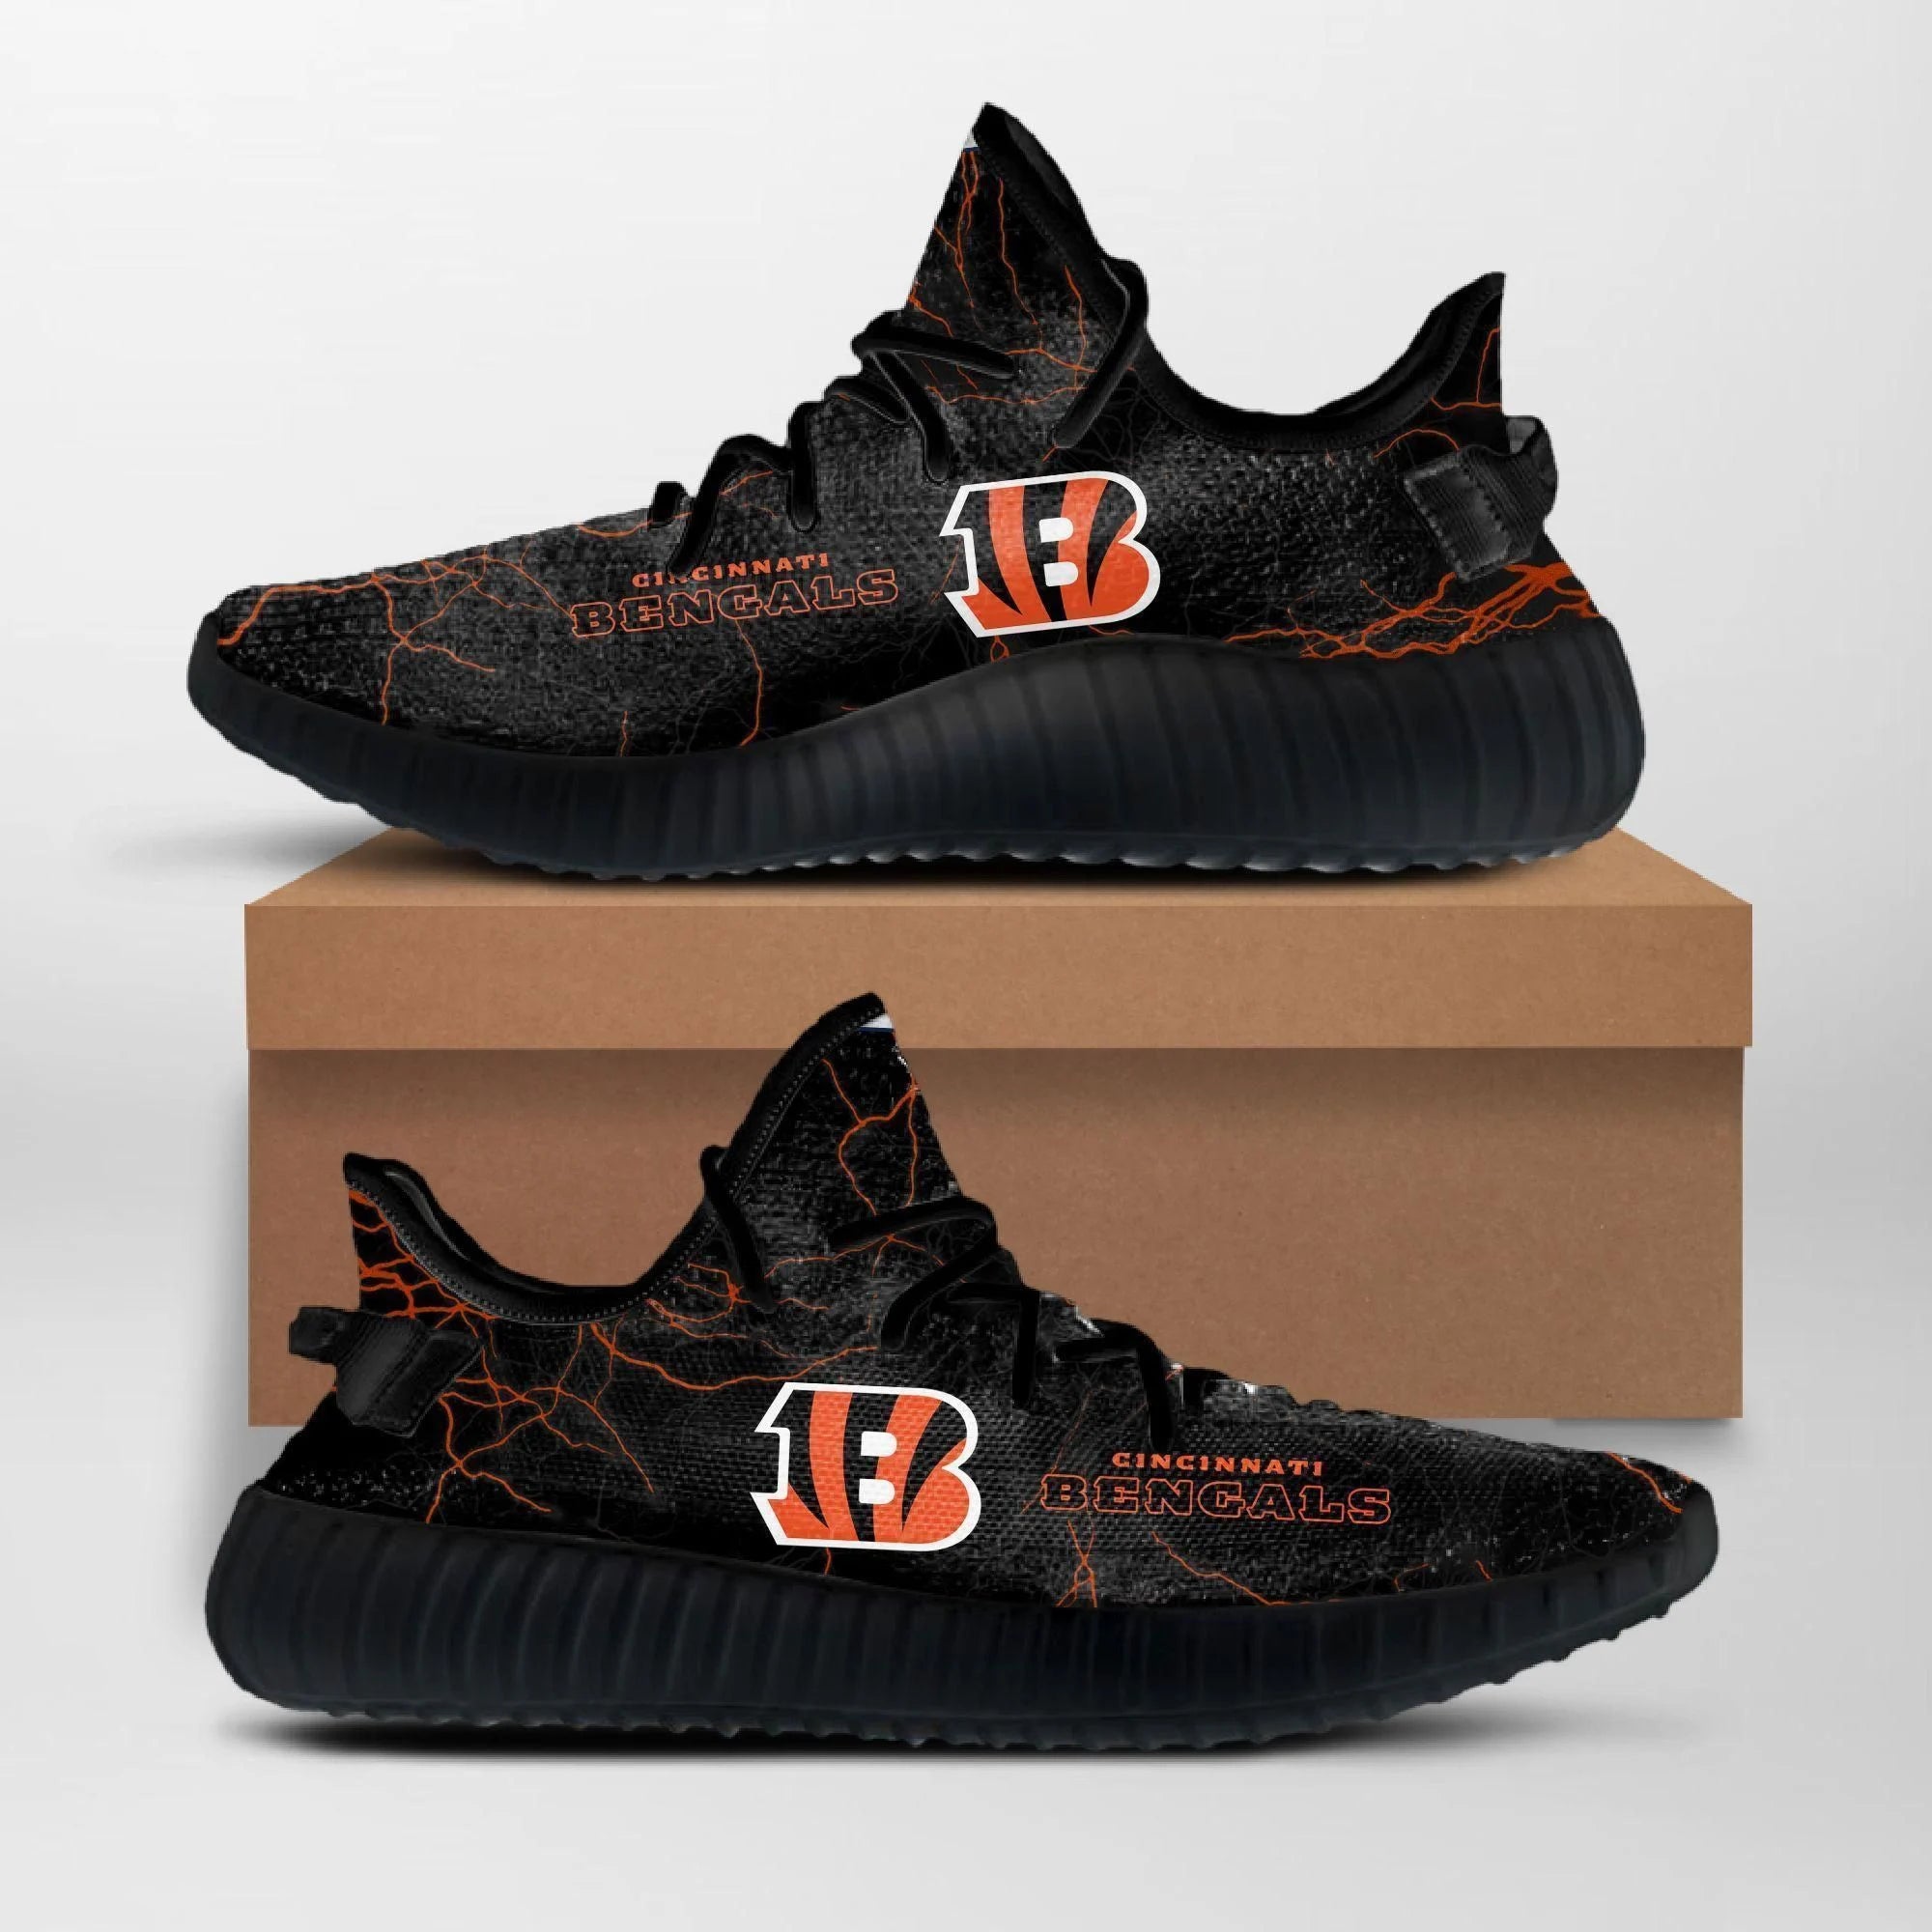 Buy Cincinnati Bengals Custom Yeezy NFL Custom Yeezy Shoes For Fans Yeezy Boost 350 V2 Top Trending Shoes Gift